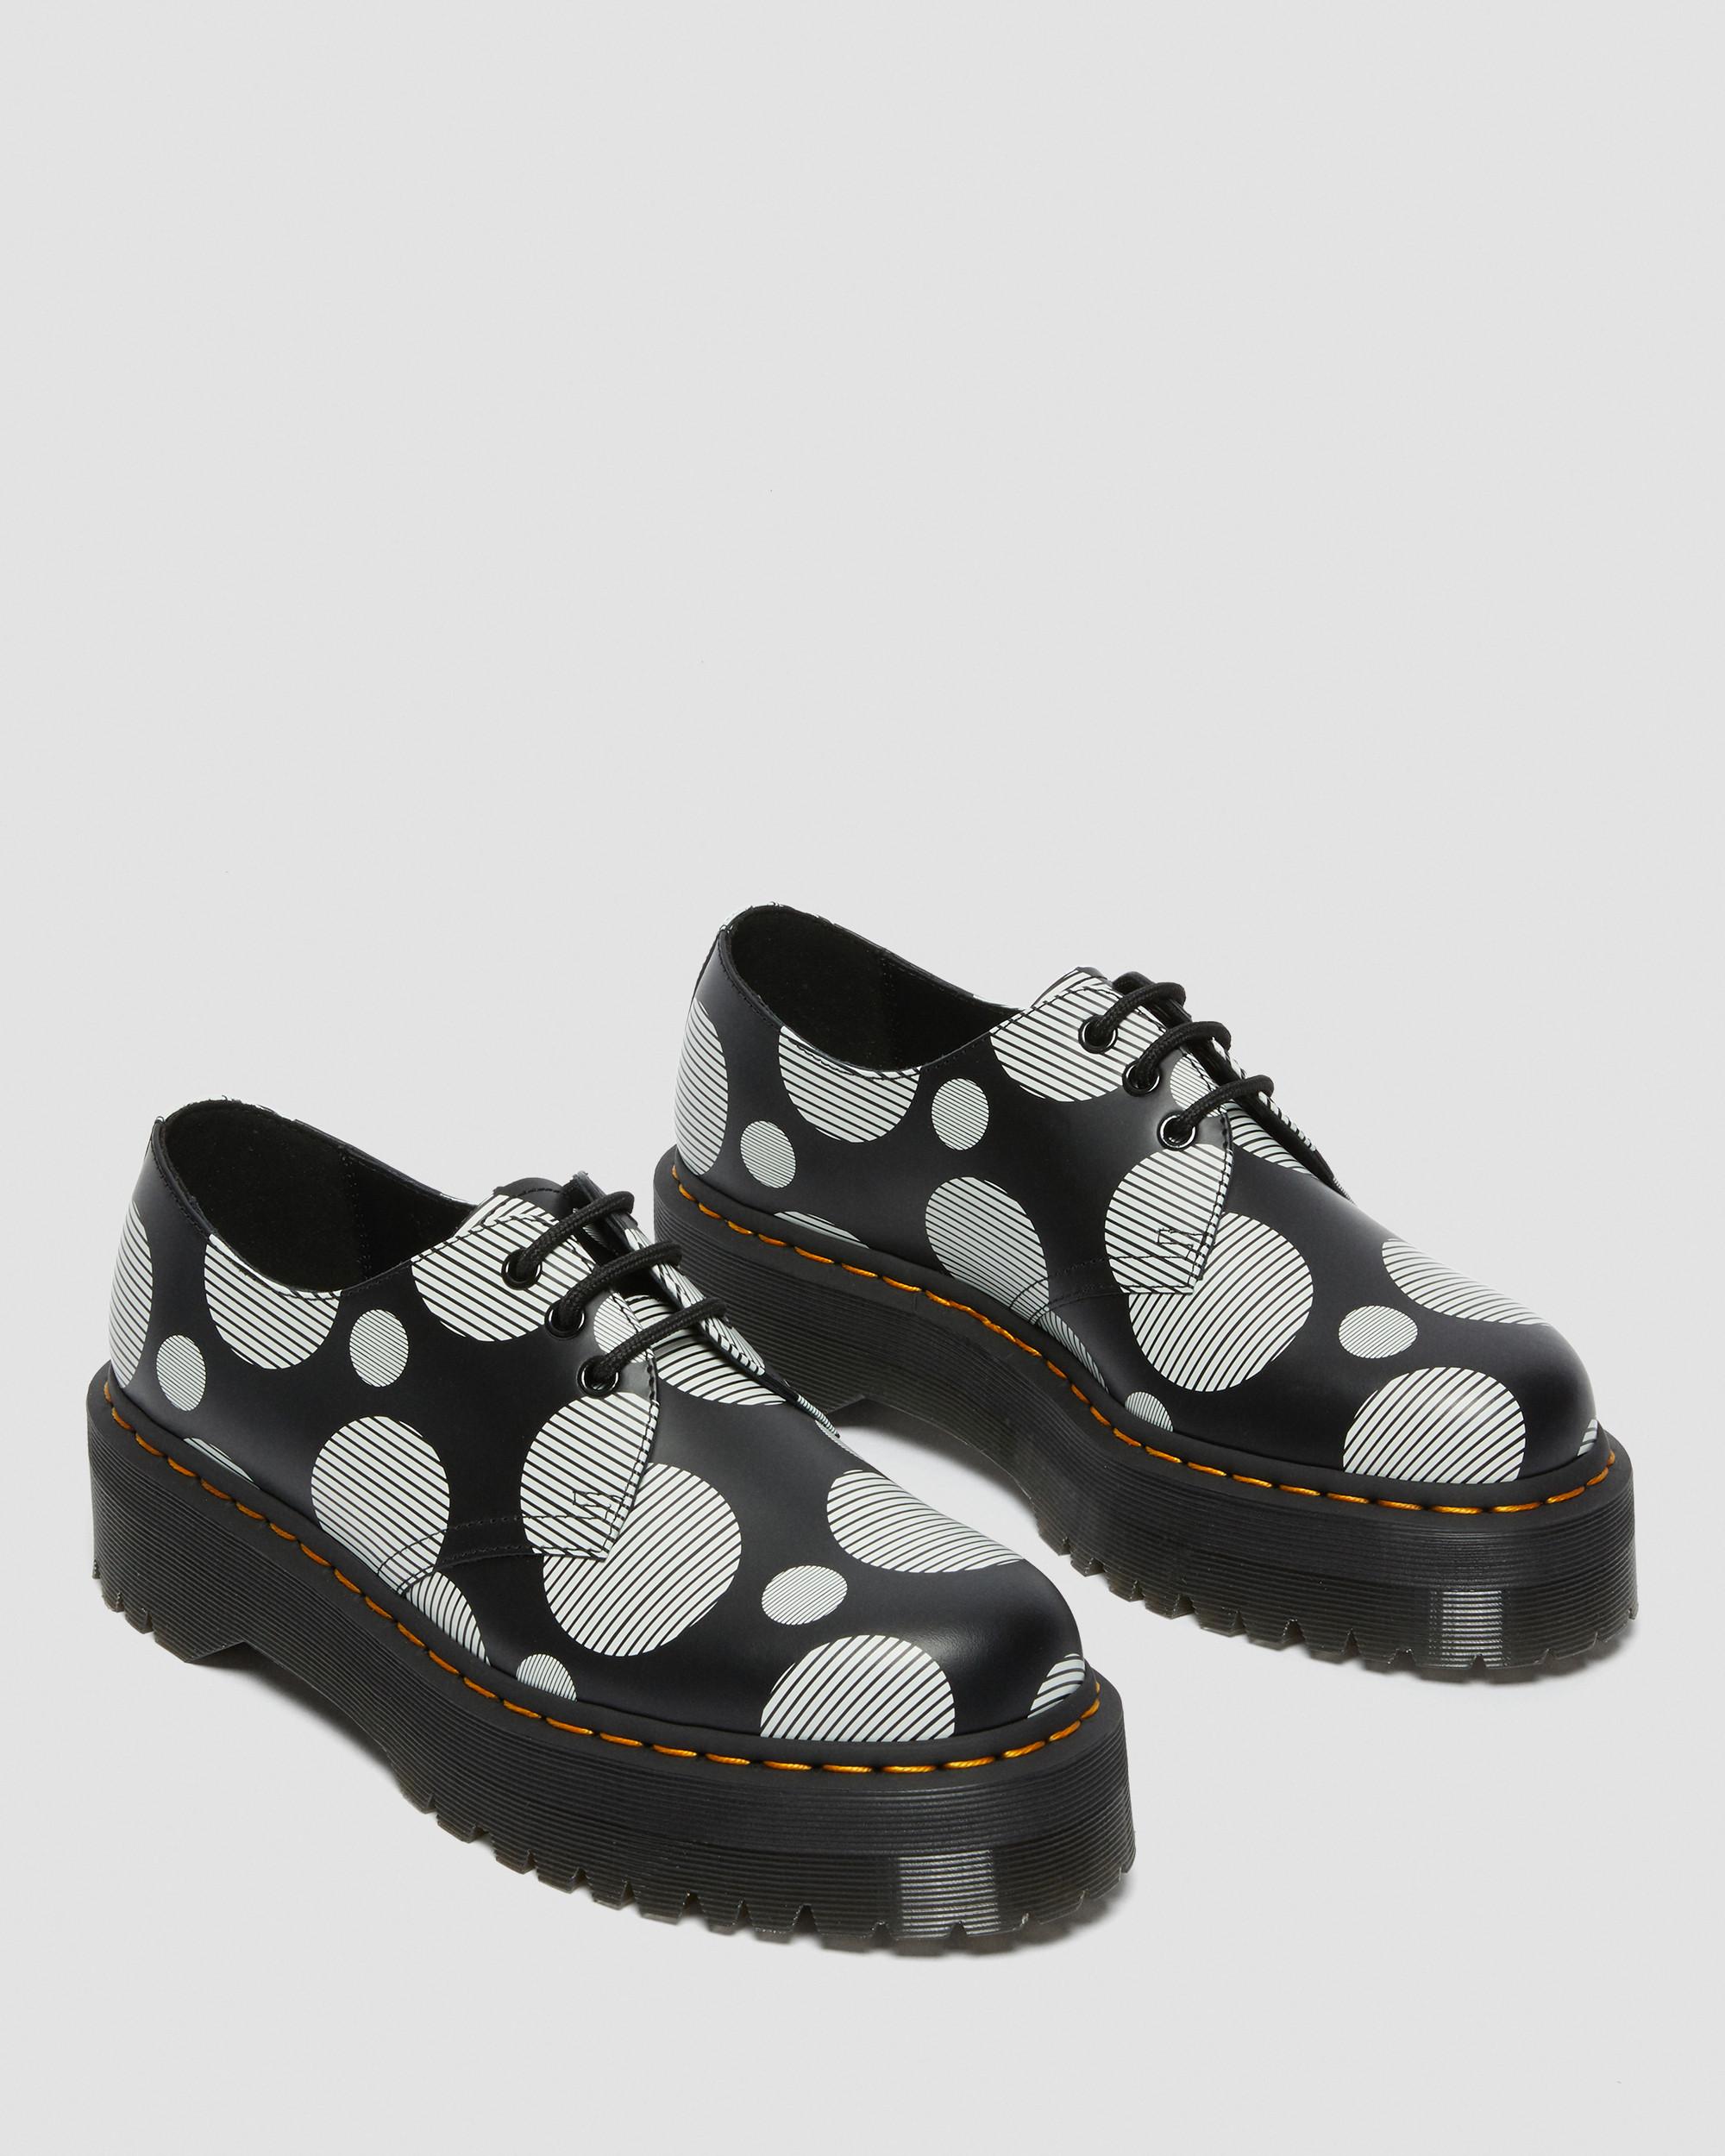 DR MARTENS 1461 Quad Polka Dot Smooth Leather Platform Shoes